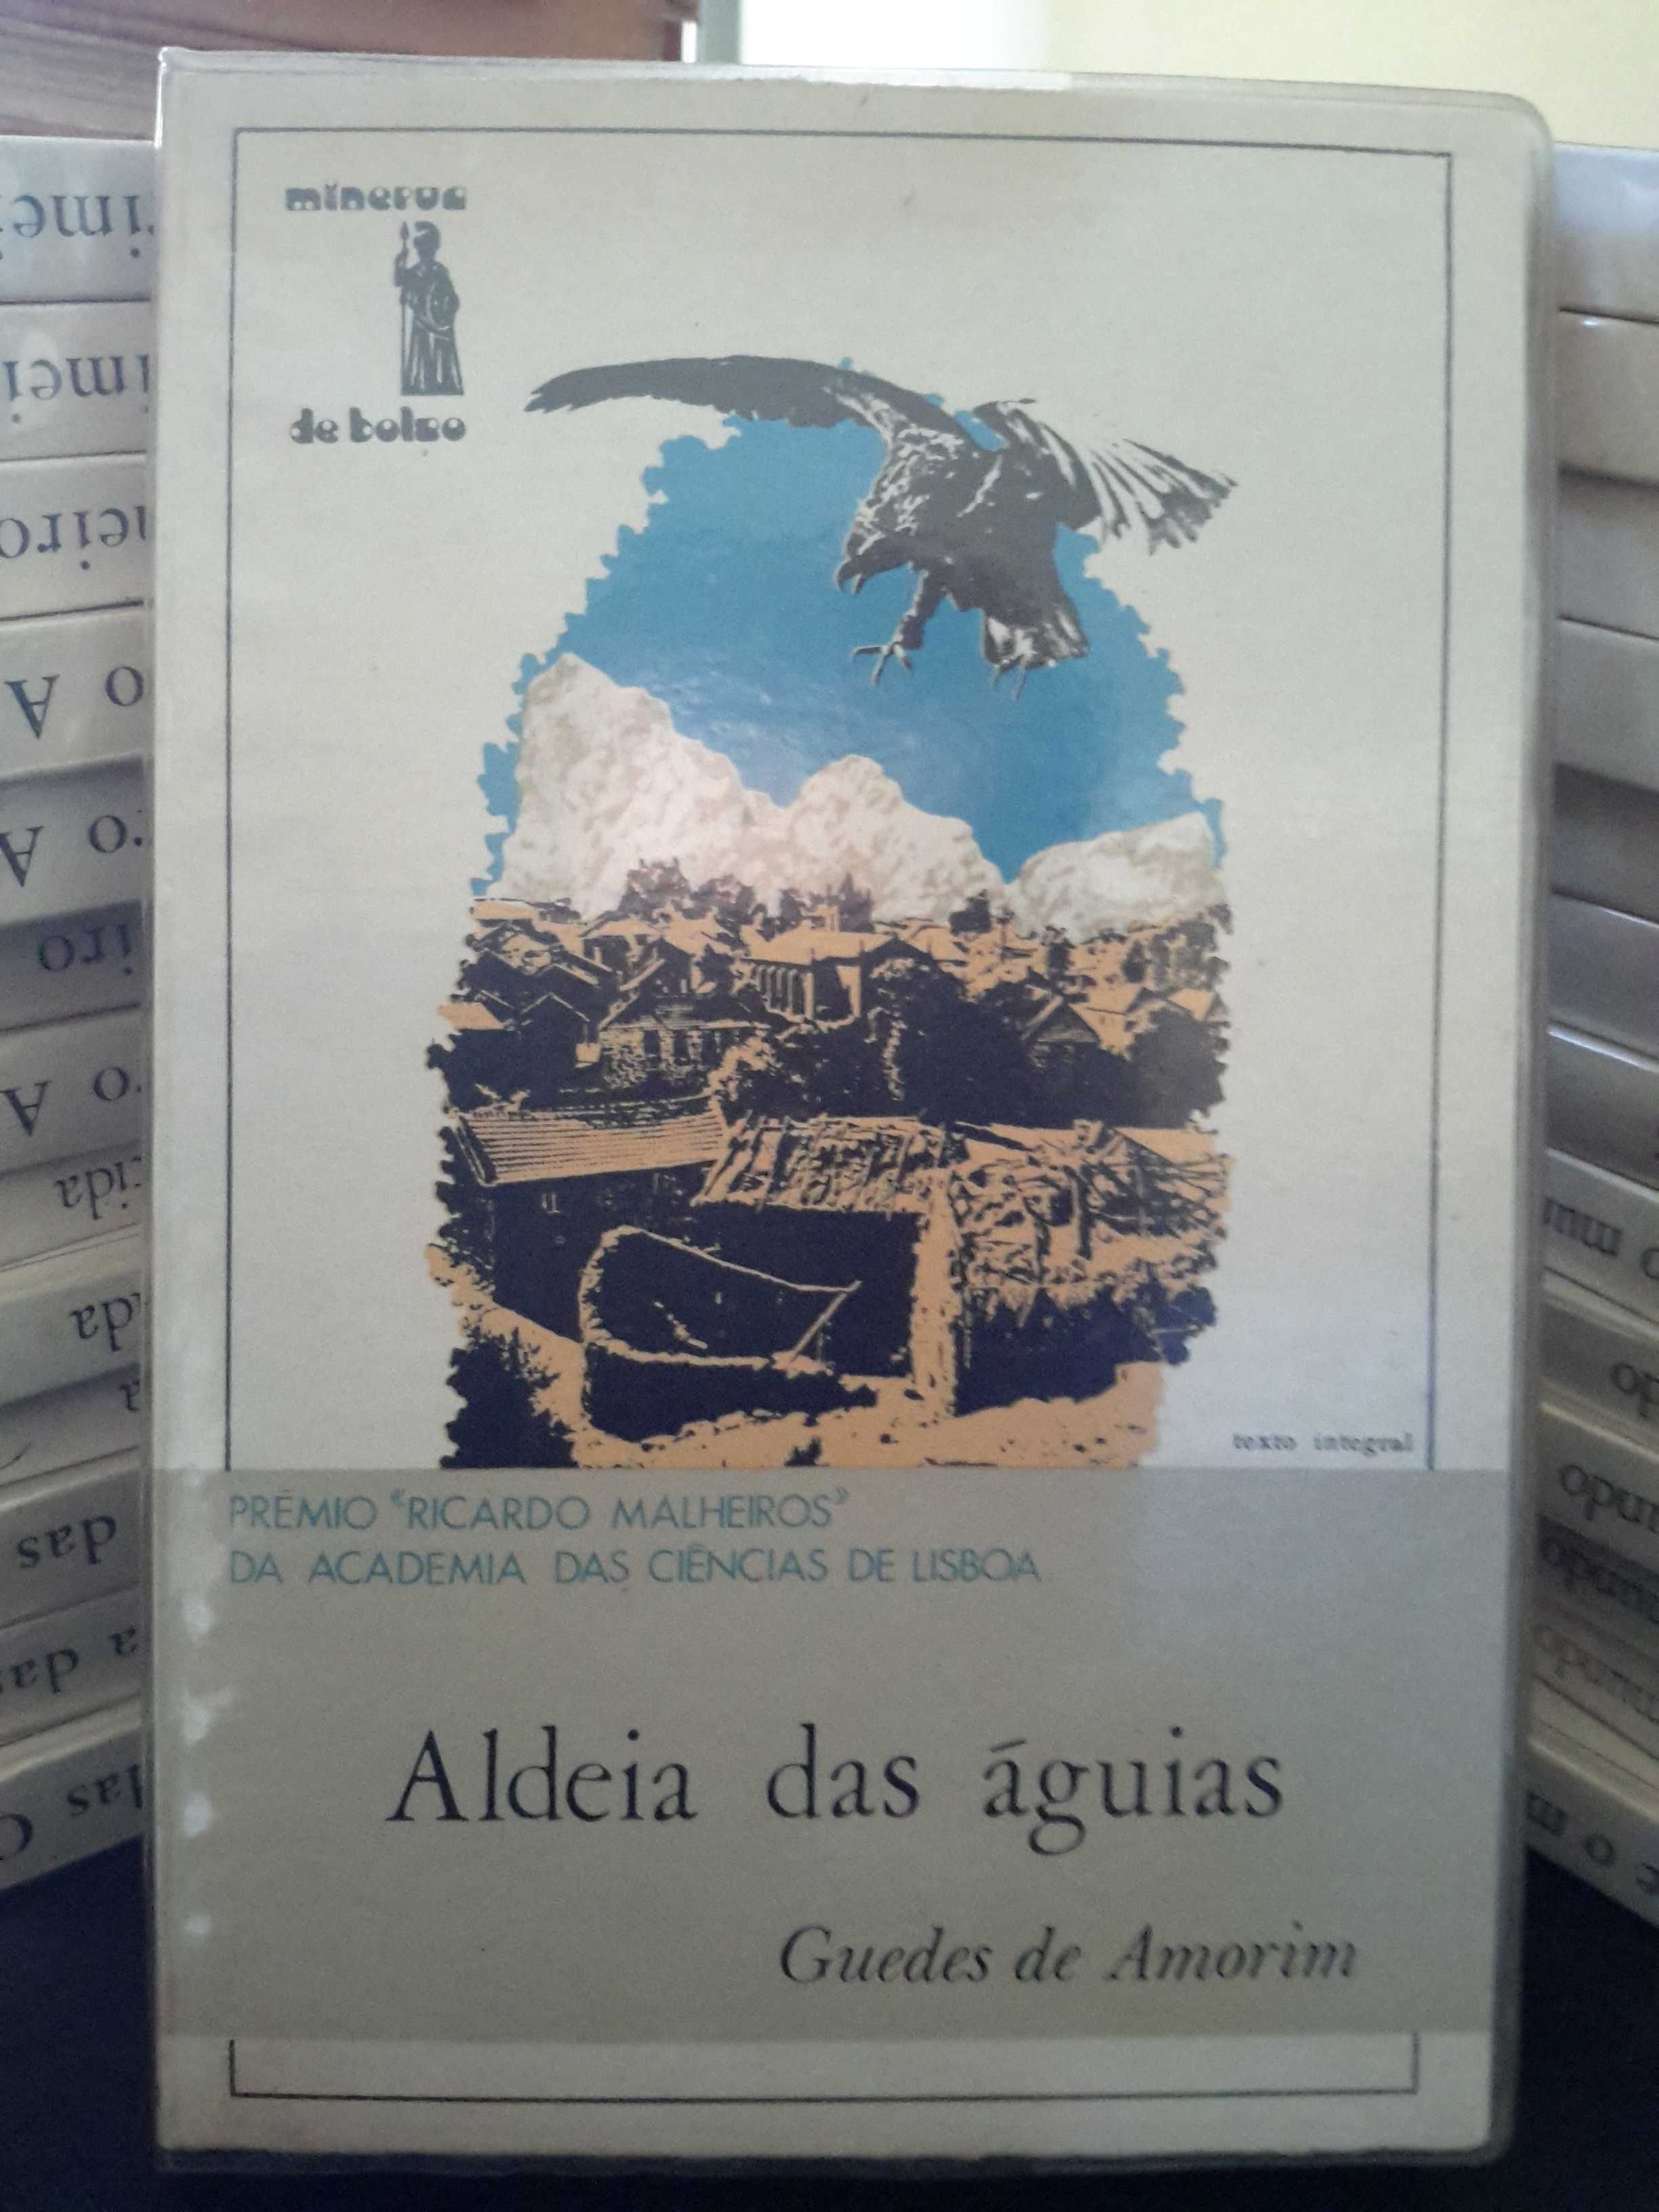 Guedes de Amorim - Aldeia das Águias